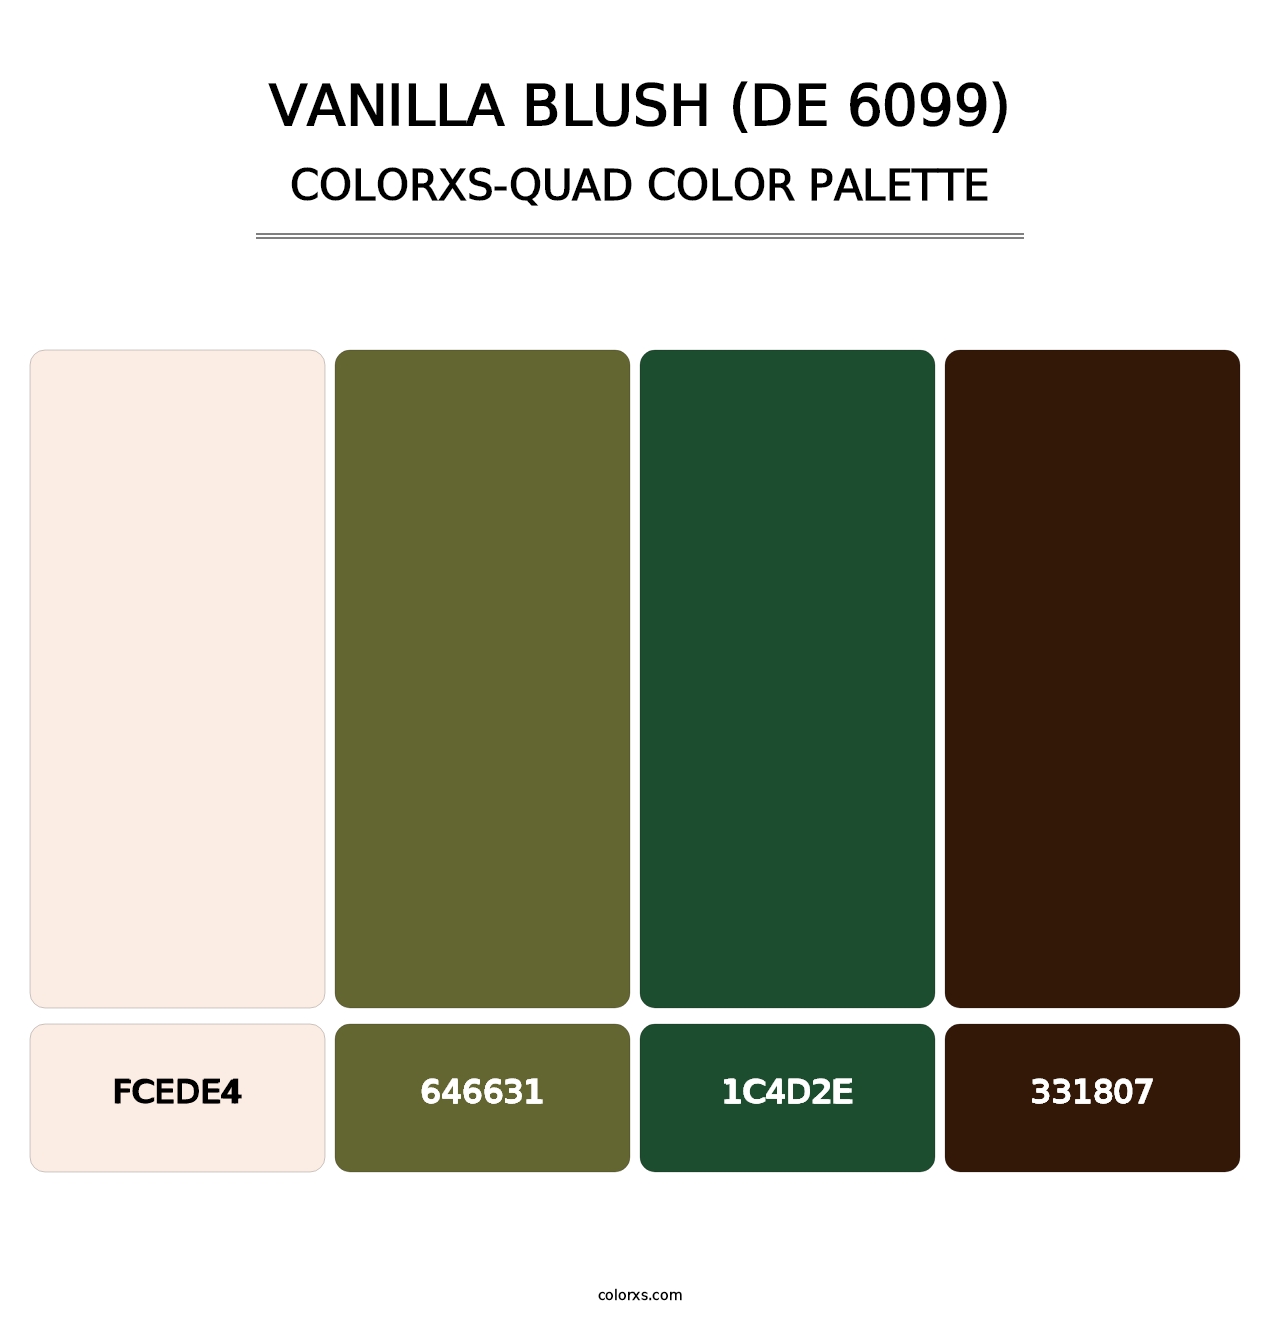 Vanilla Blush (DE 6099) - Colorxs Quad Palette